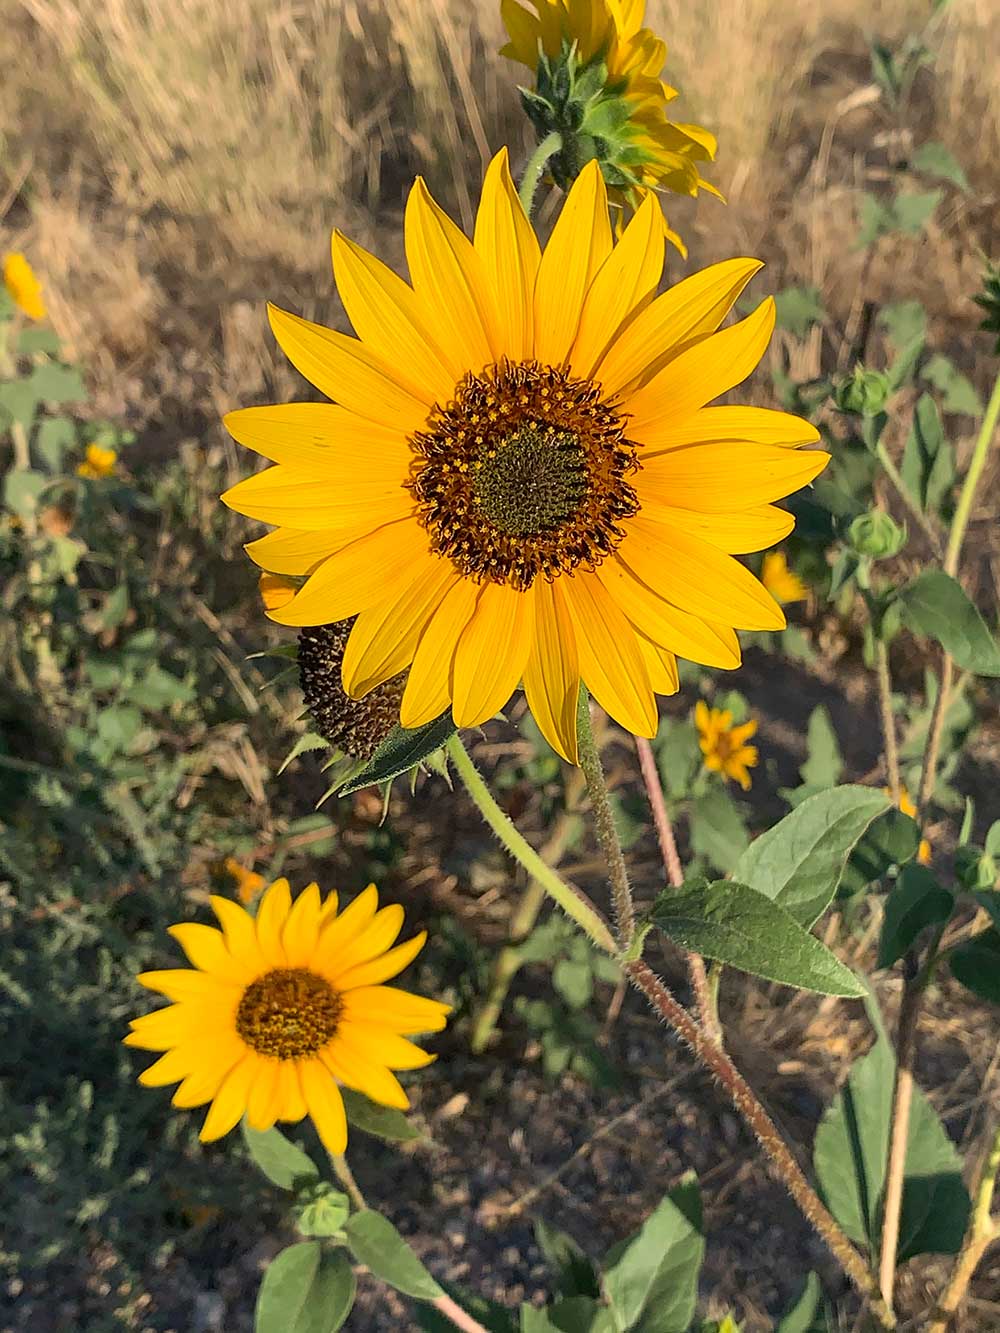 Sunflower photo by Kim Victoria